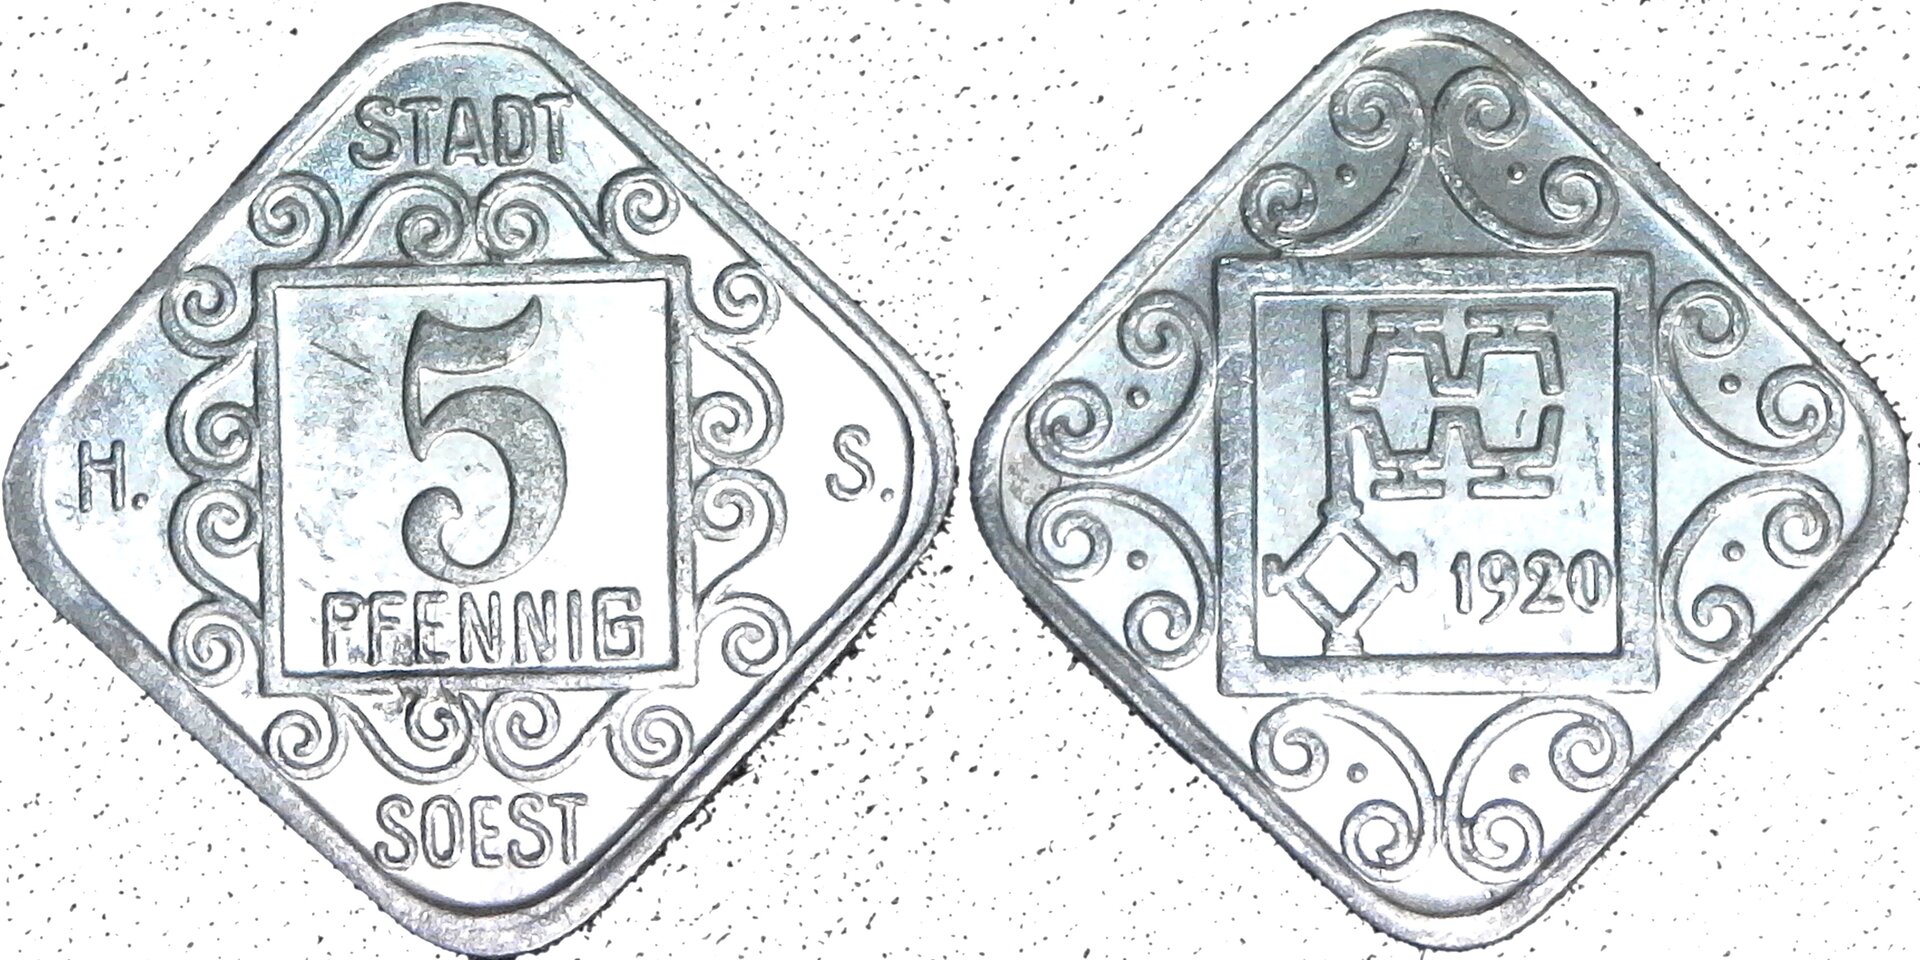 Germany Soest 5 Pfennig 1920 obv-side-cutout.jpg